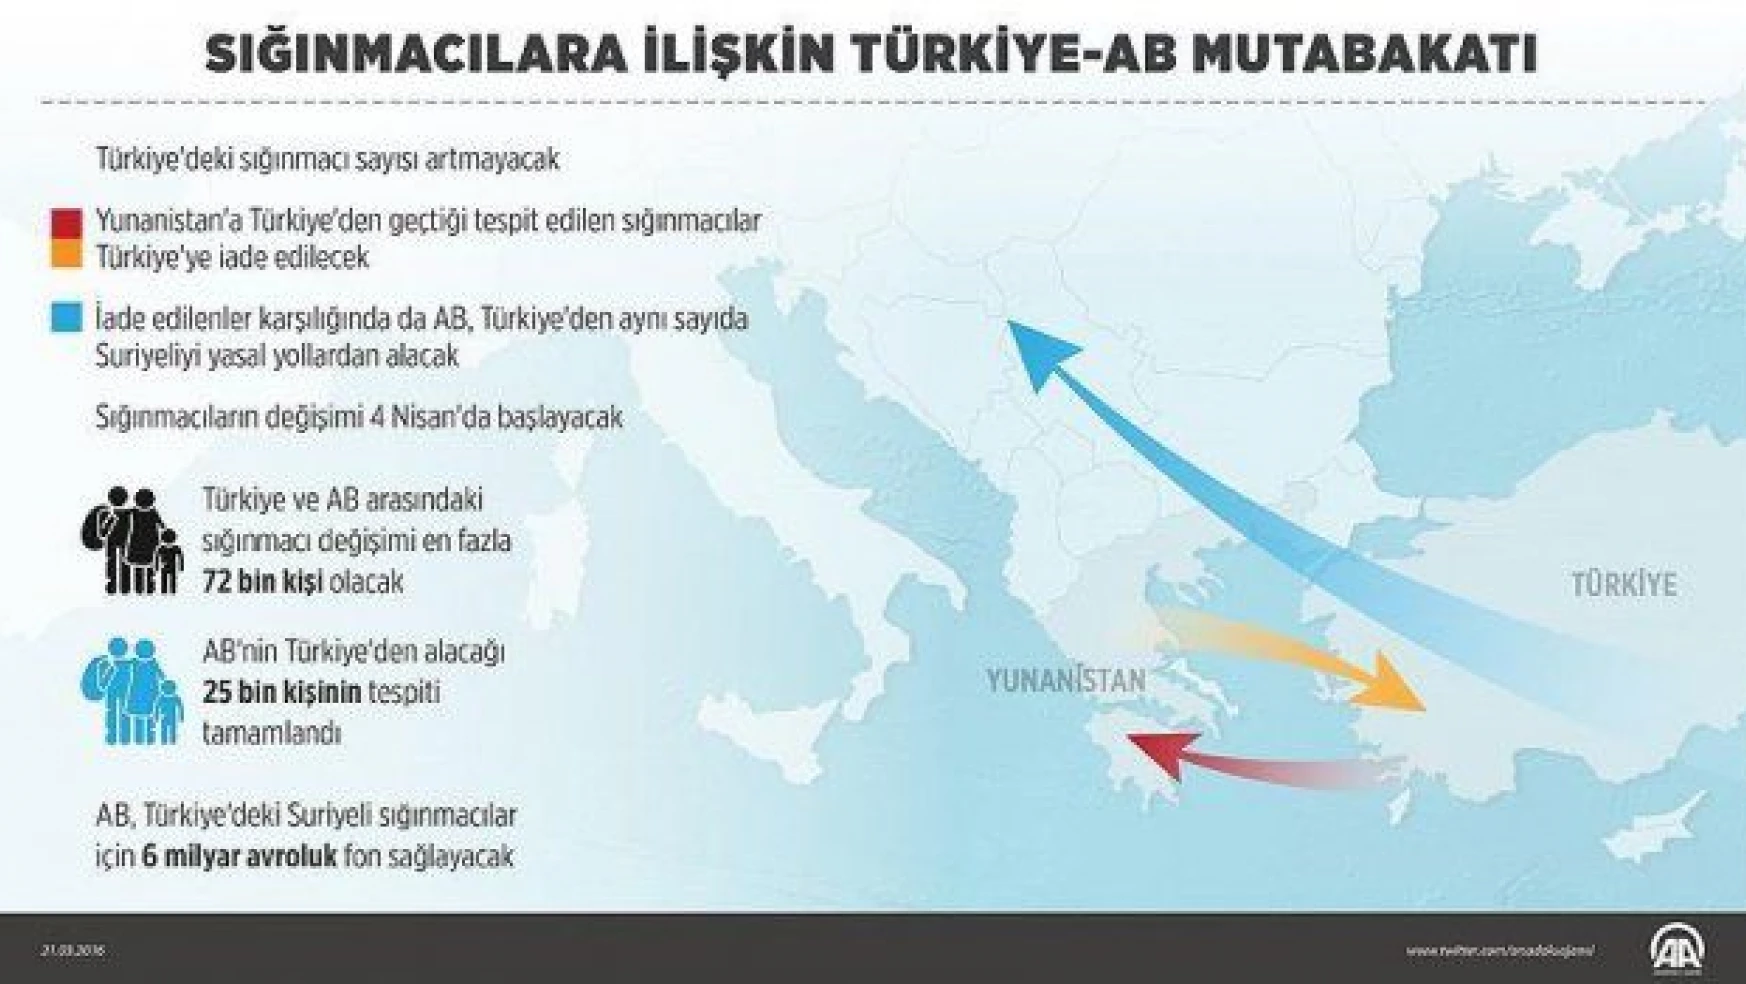 Türkiye-AB mutabakatı yürürlükte